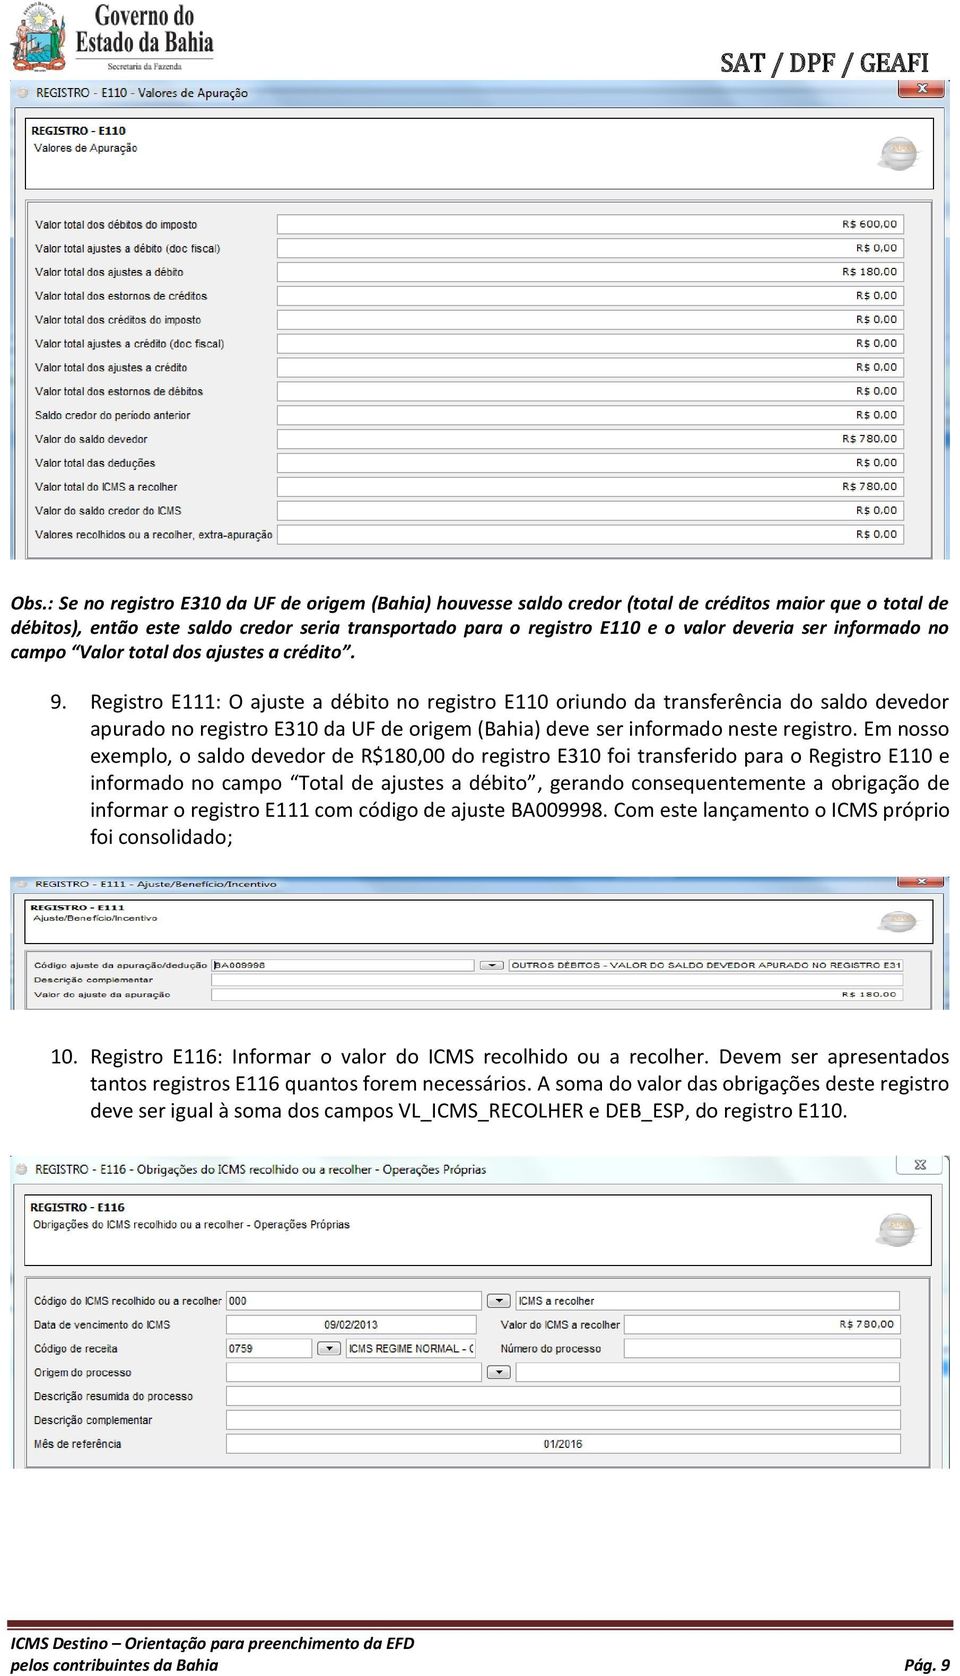 Registro E111: O ajuste a débito no registro E110 oriundo da transferência do saldo devedor apurado no registro E310 da UF de origem (Bahia) deve ser informado neste registro.